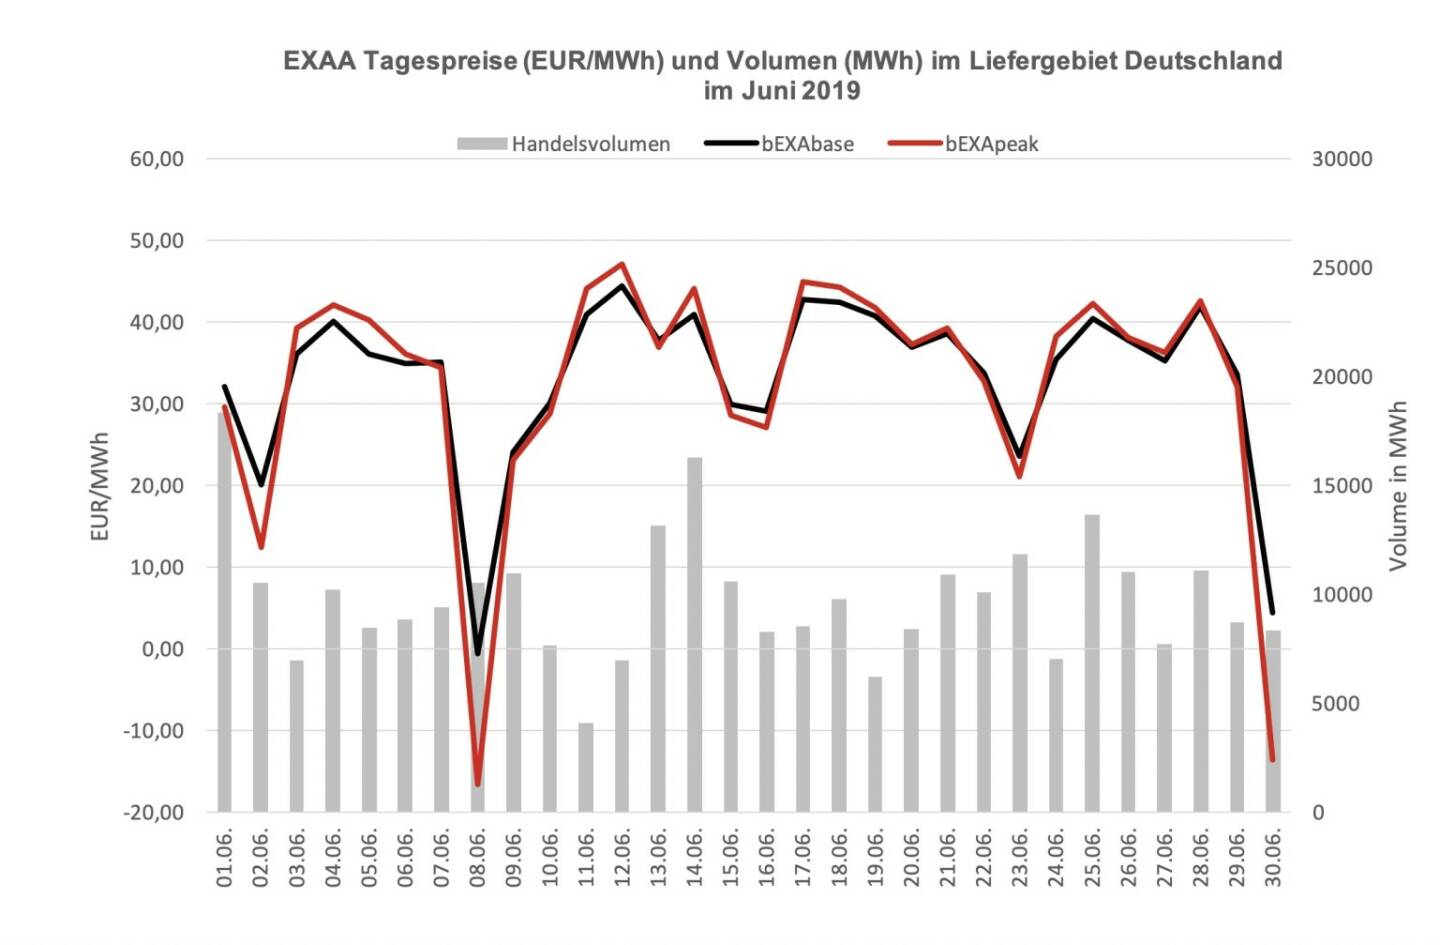 EXAA Tagespreise (EUR/MWh) und Volumen (MWh) im Liefergebiet Deutschland im Juni 2019